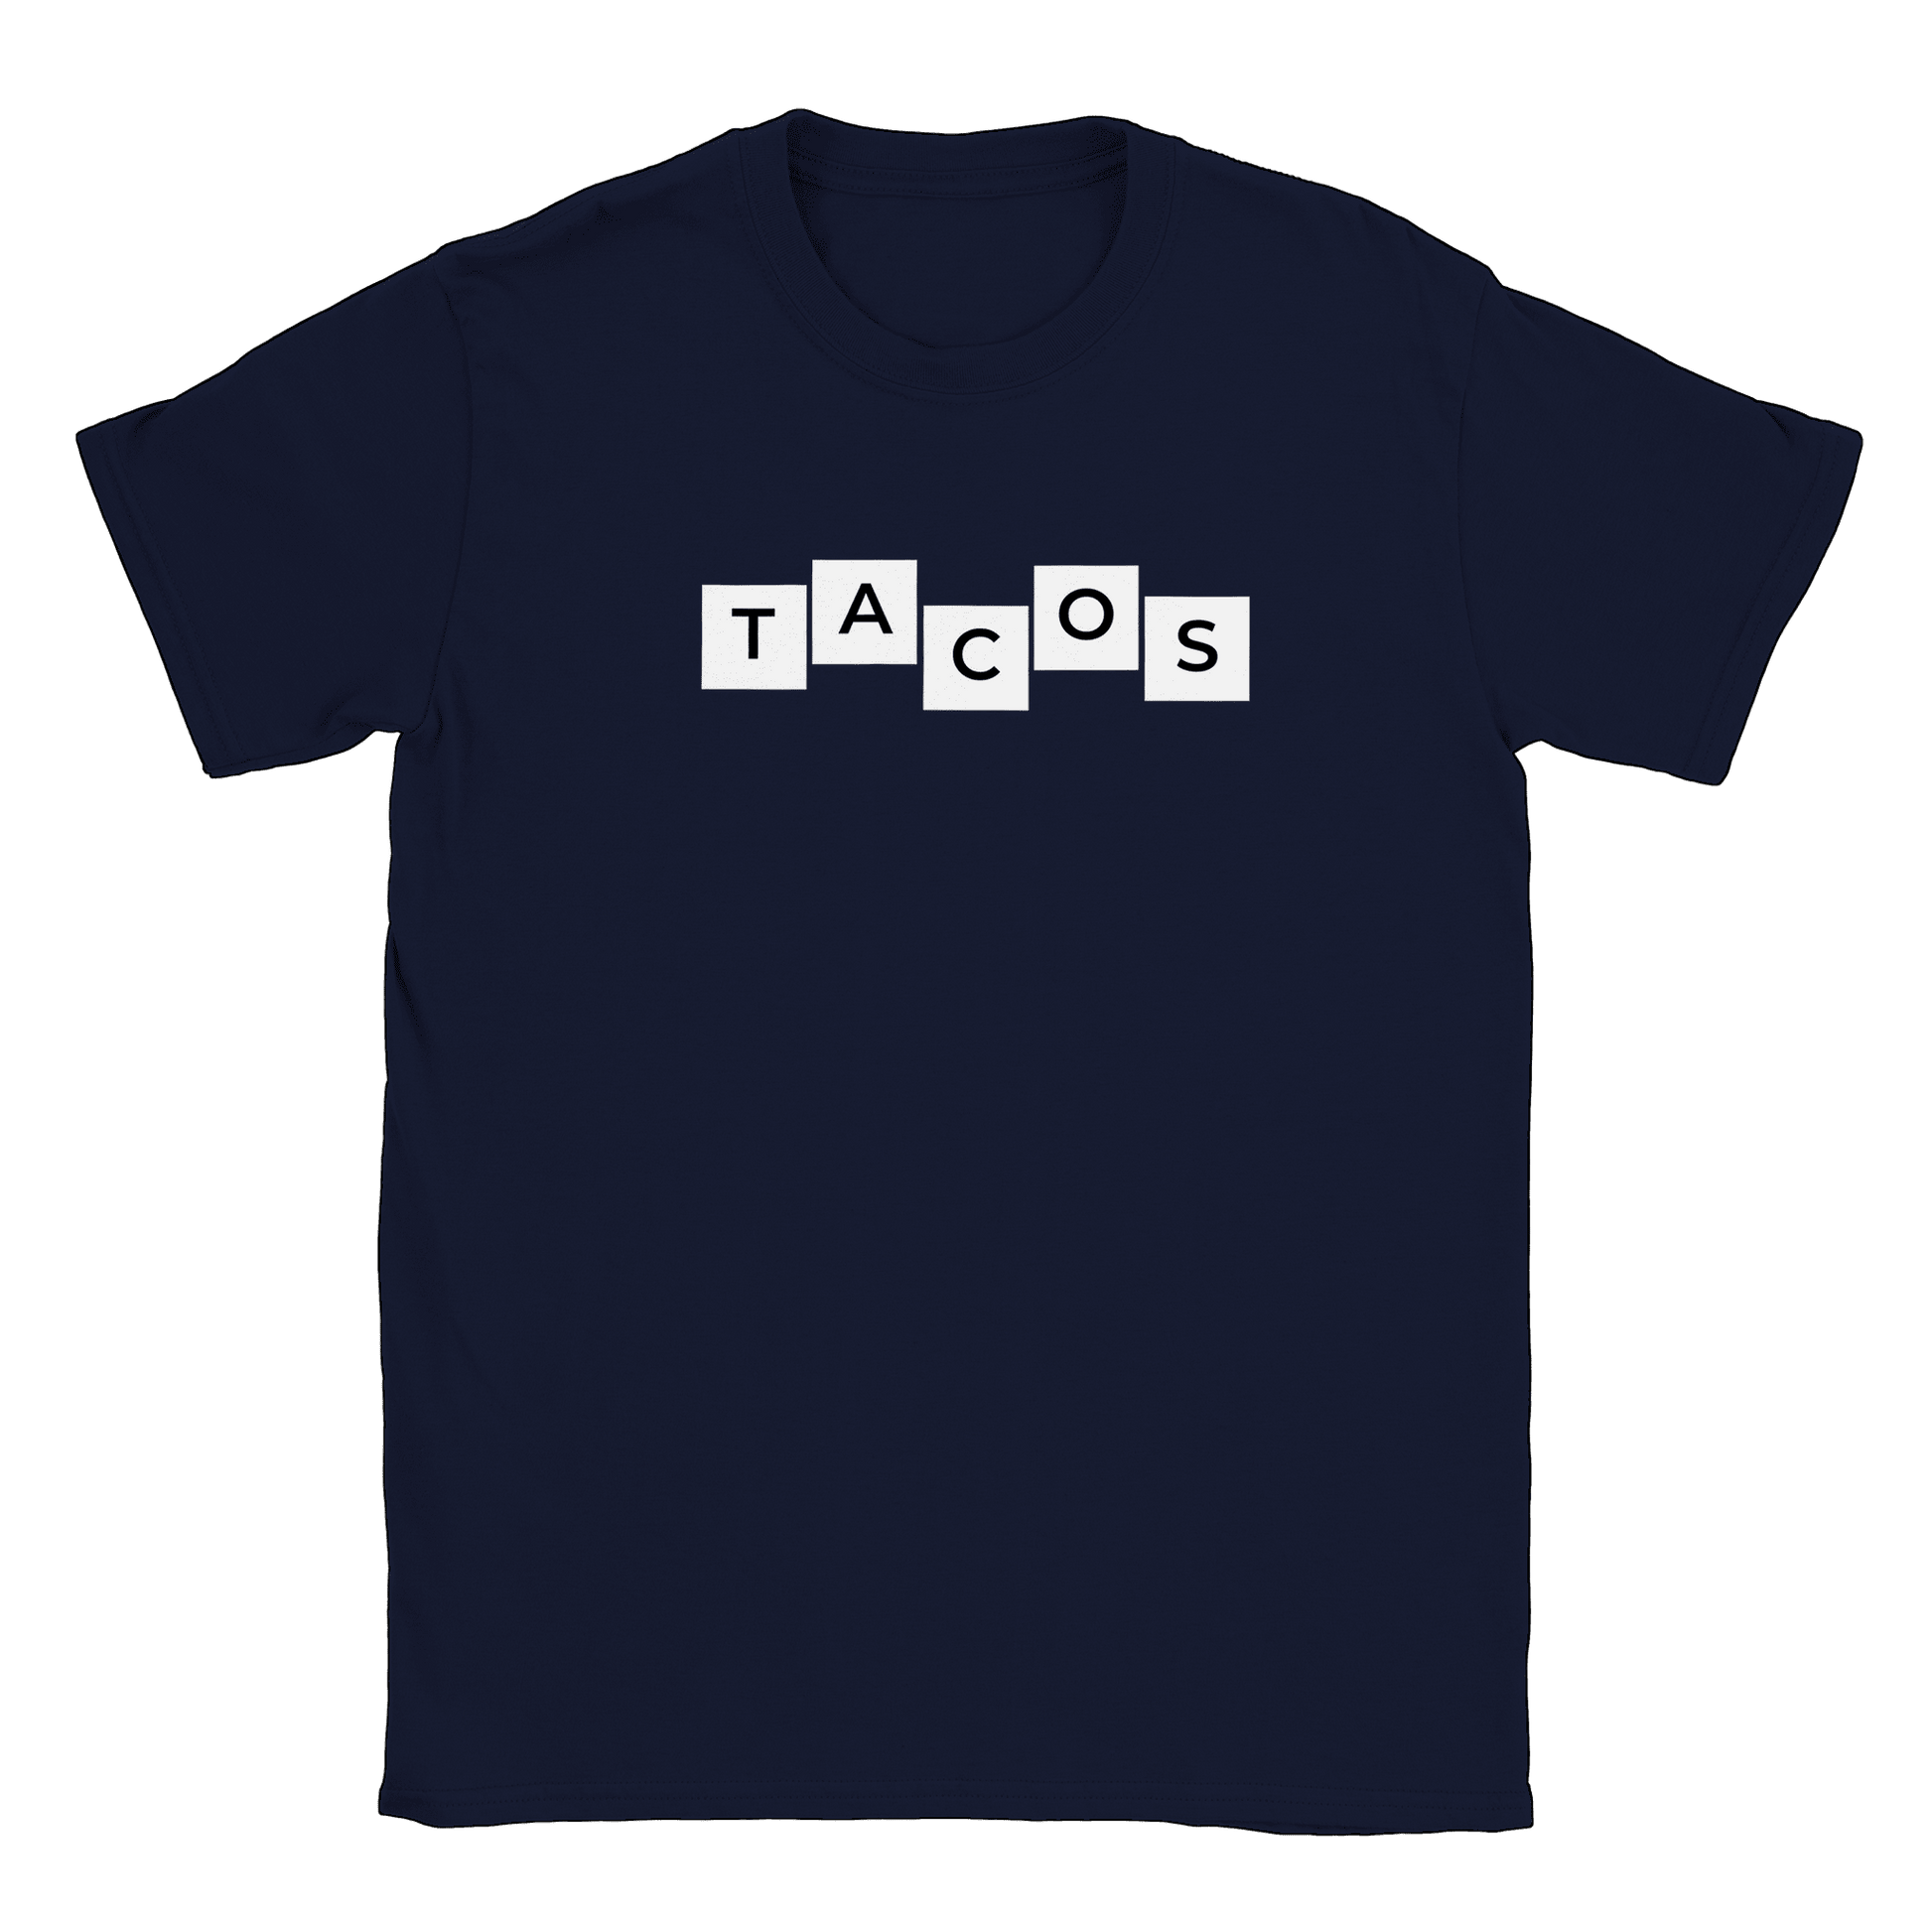 Tacos - T-shirt Navy